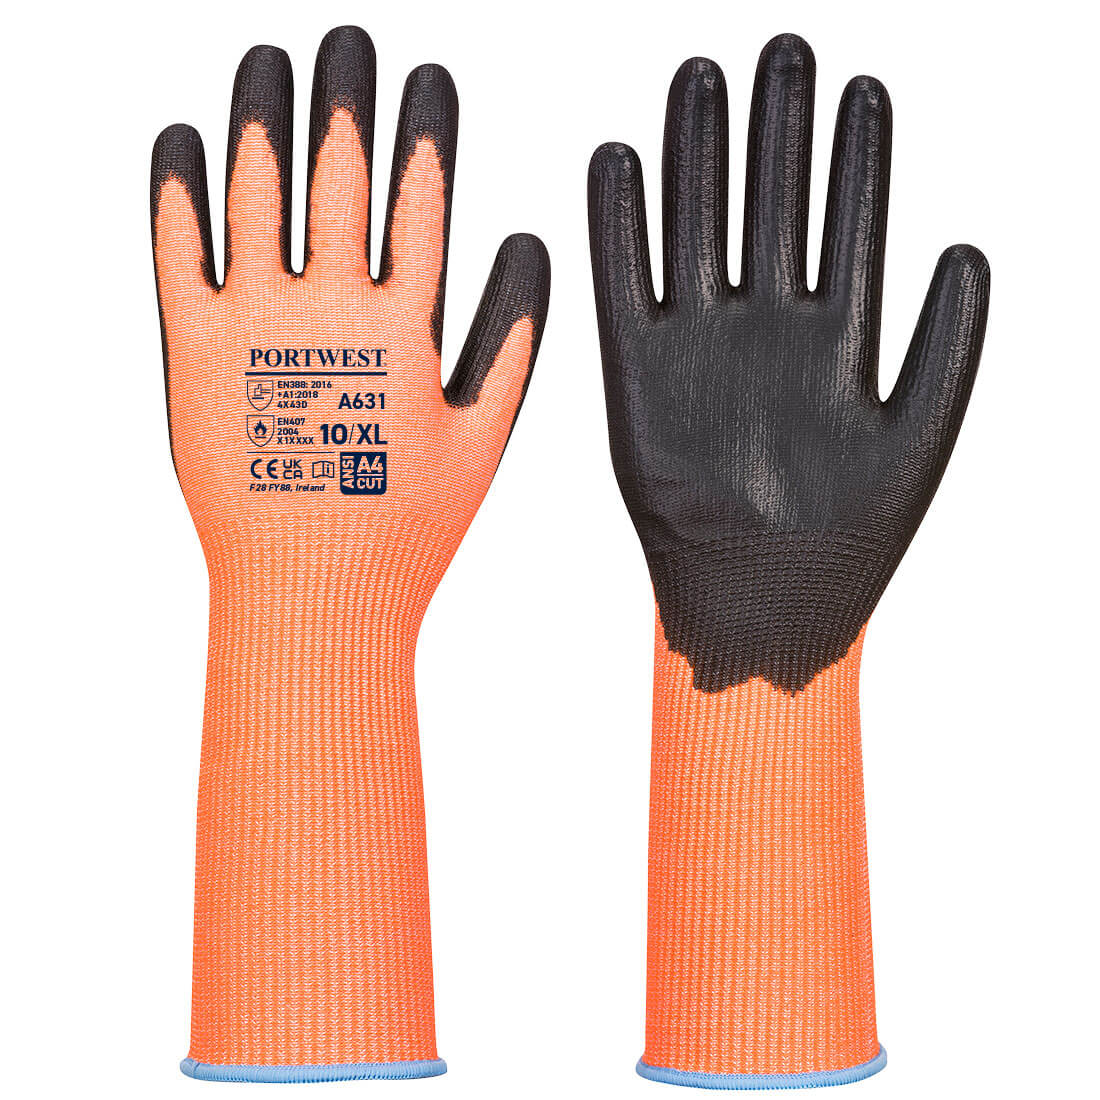 Vis-Tex Cut Glove Long Cuff - Orange/Black